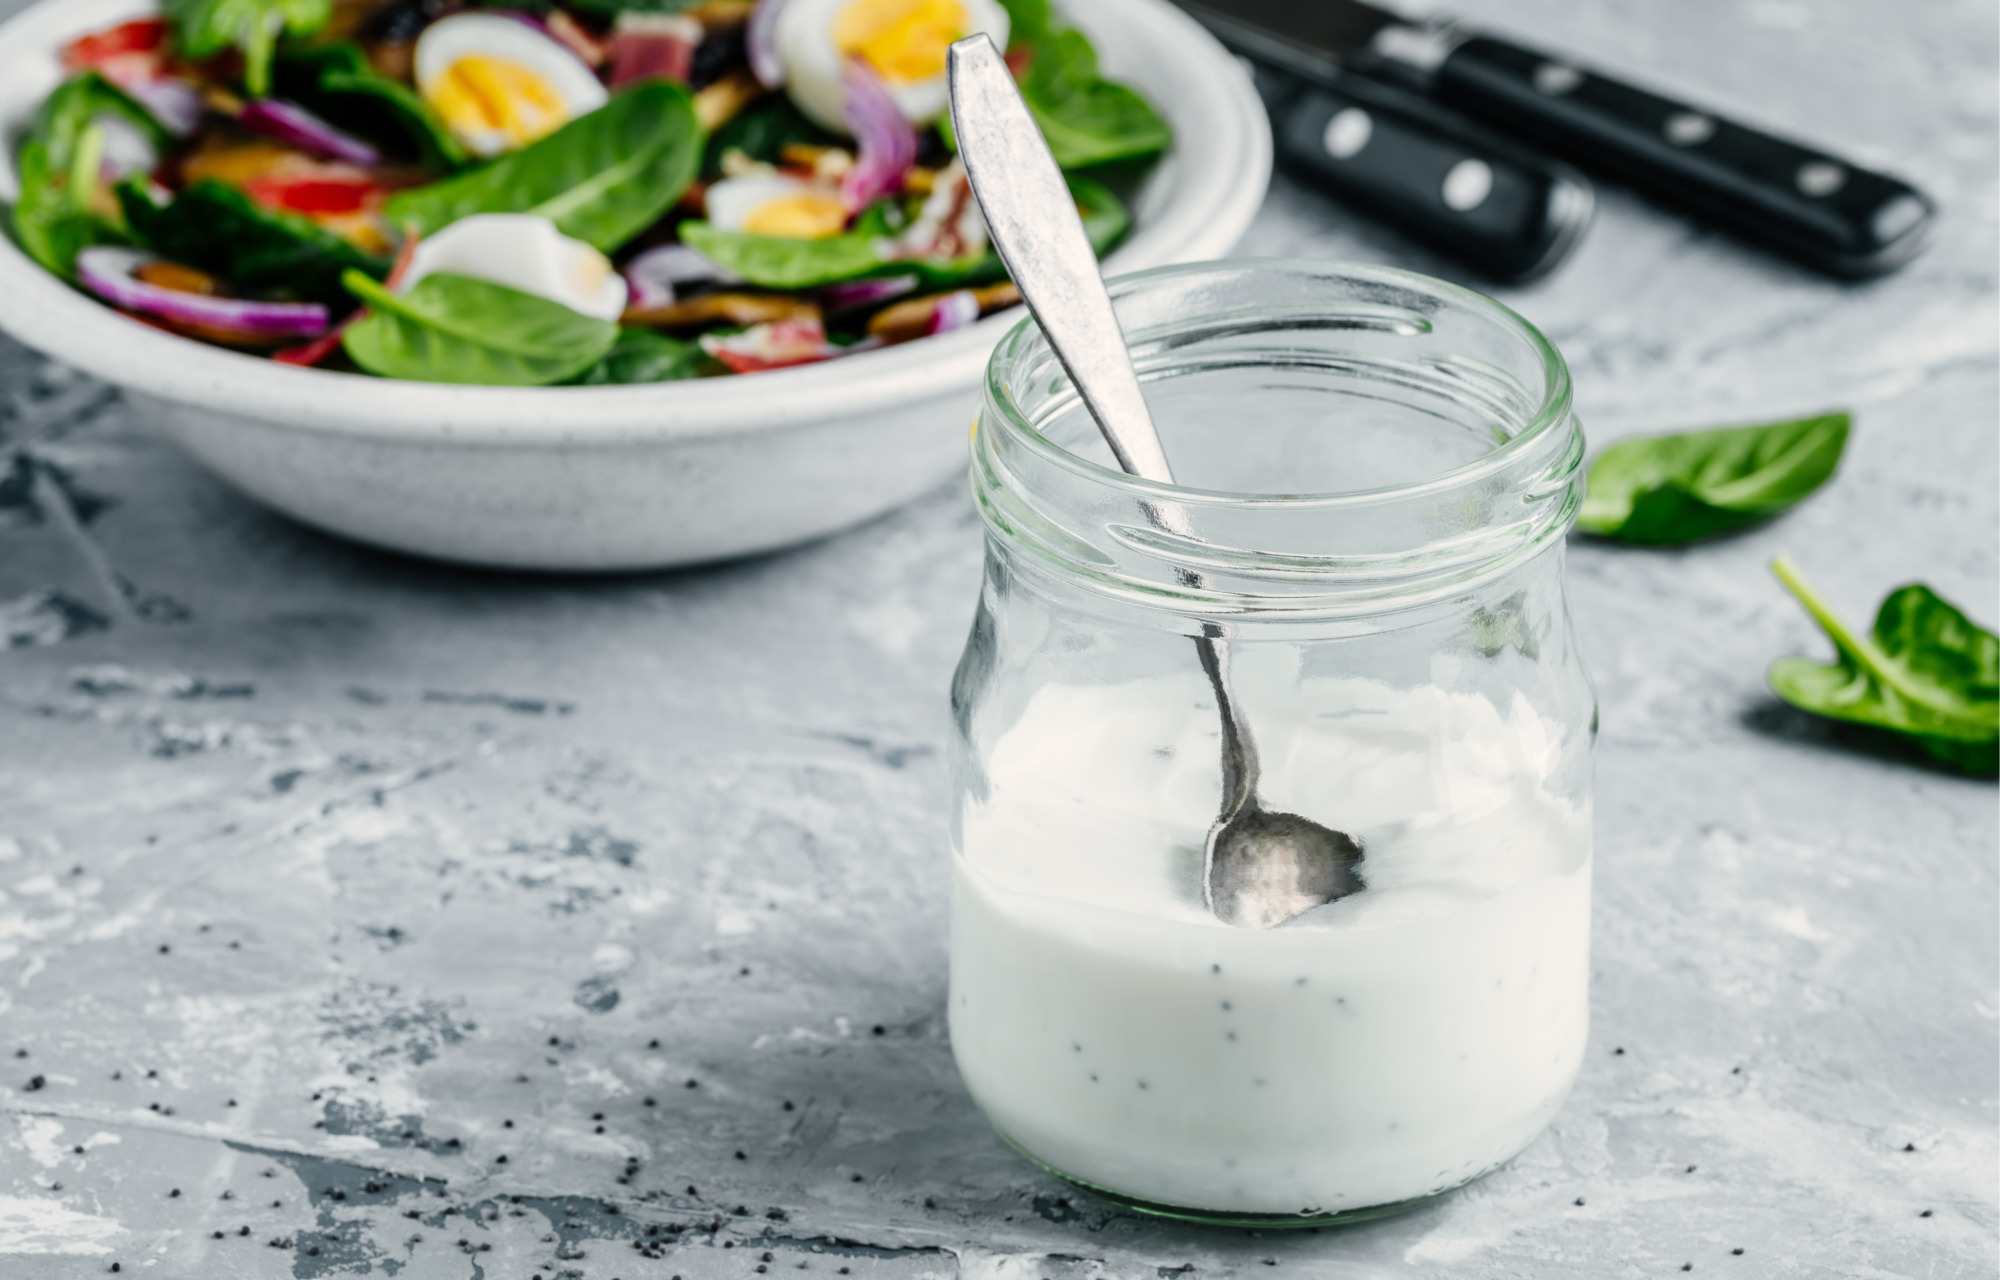 Greek yogurt with spinach: Healthy skin recipe